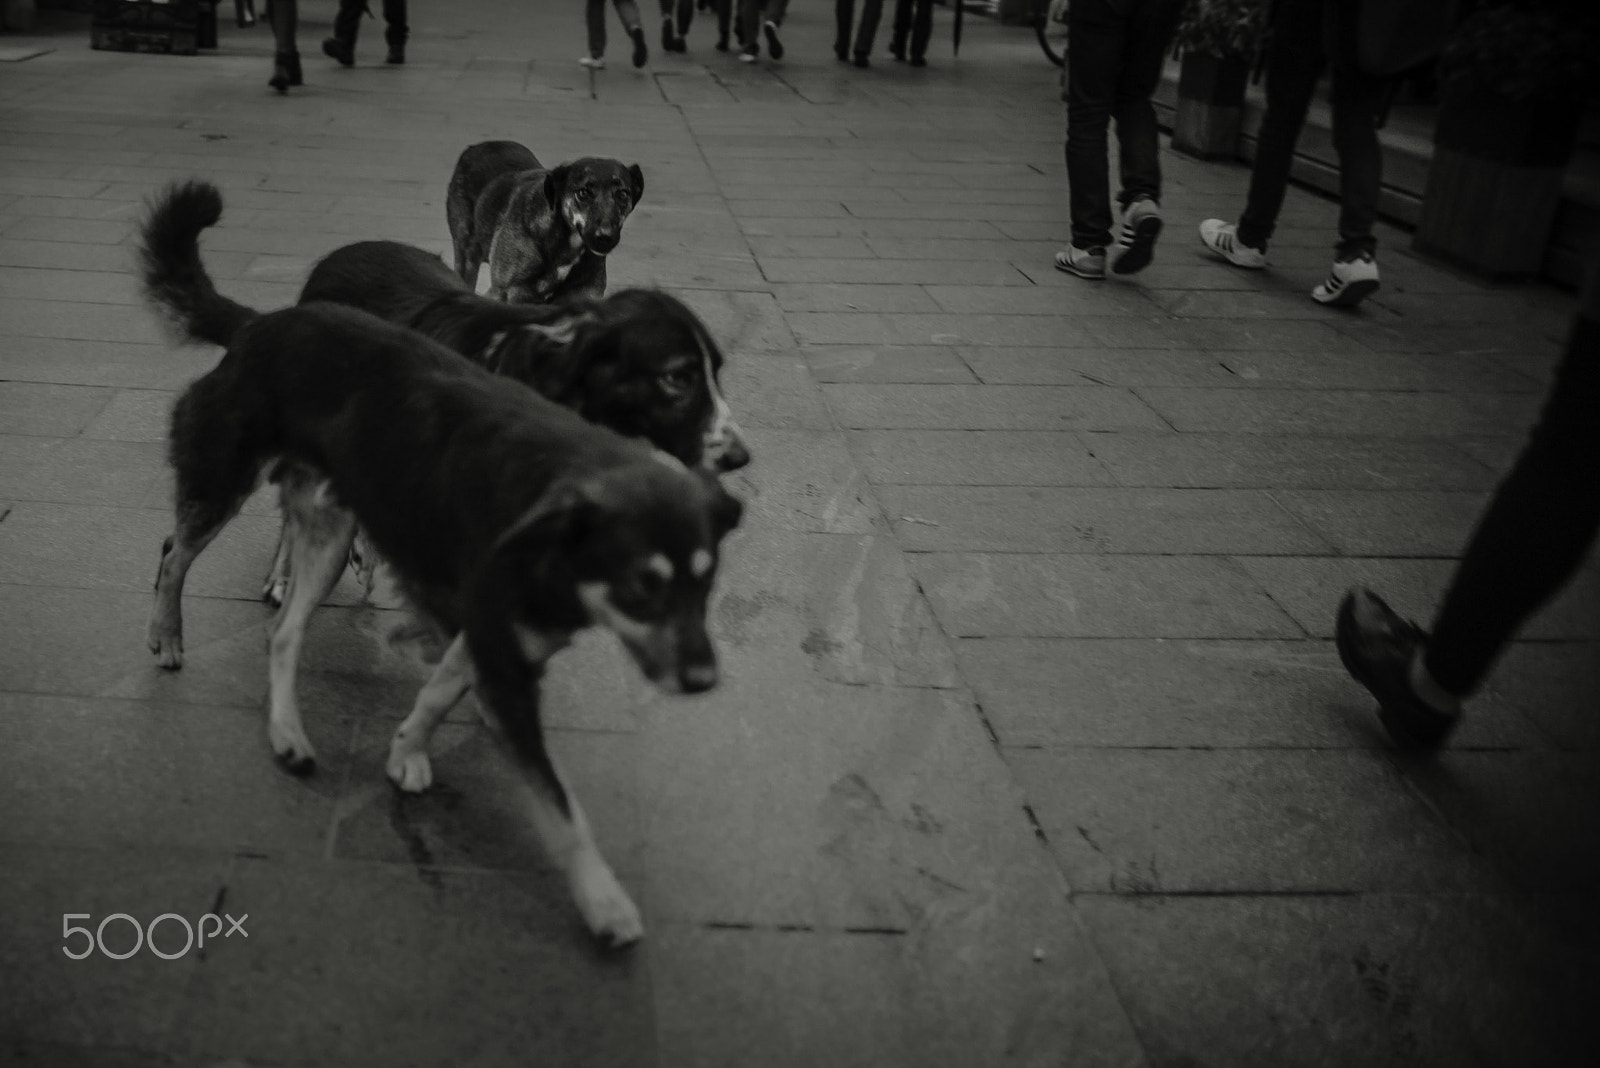 Nikon D750 sample photo. Street dog contact photography